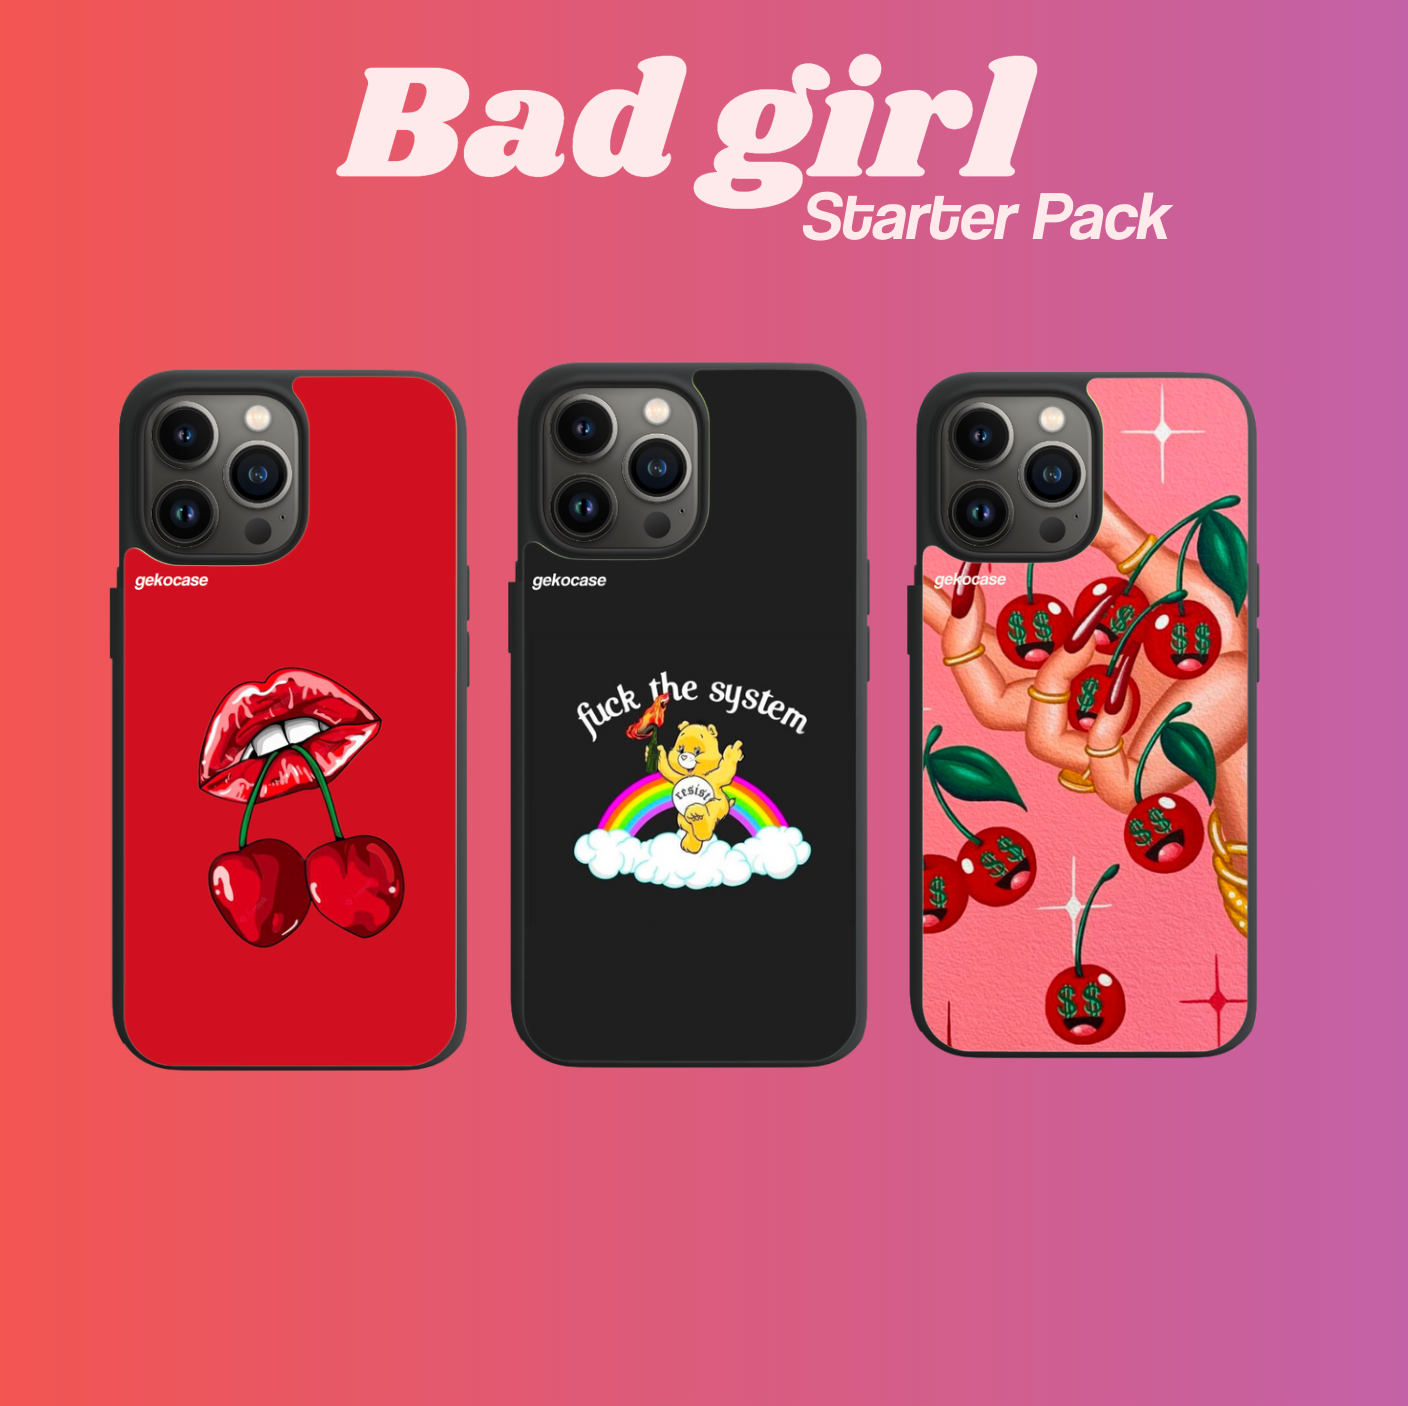 The bad girl - starter pack